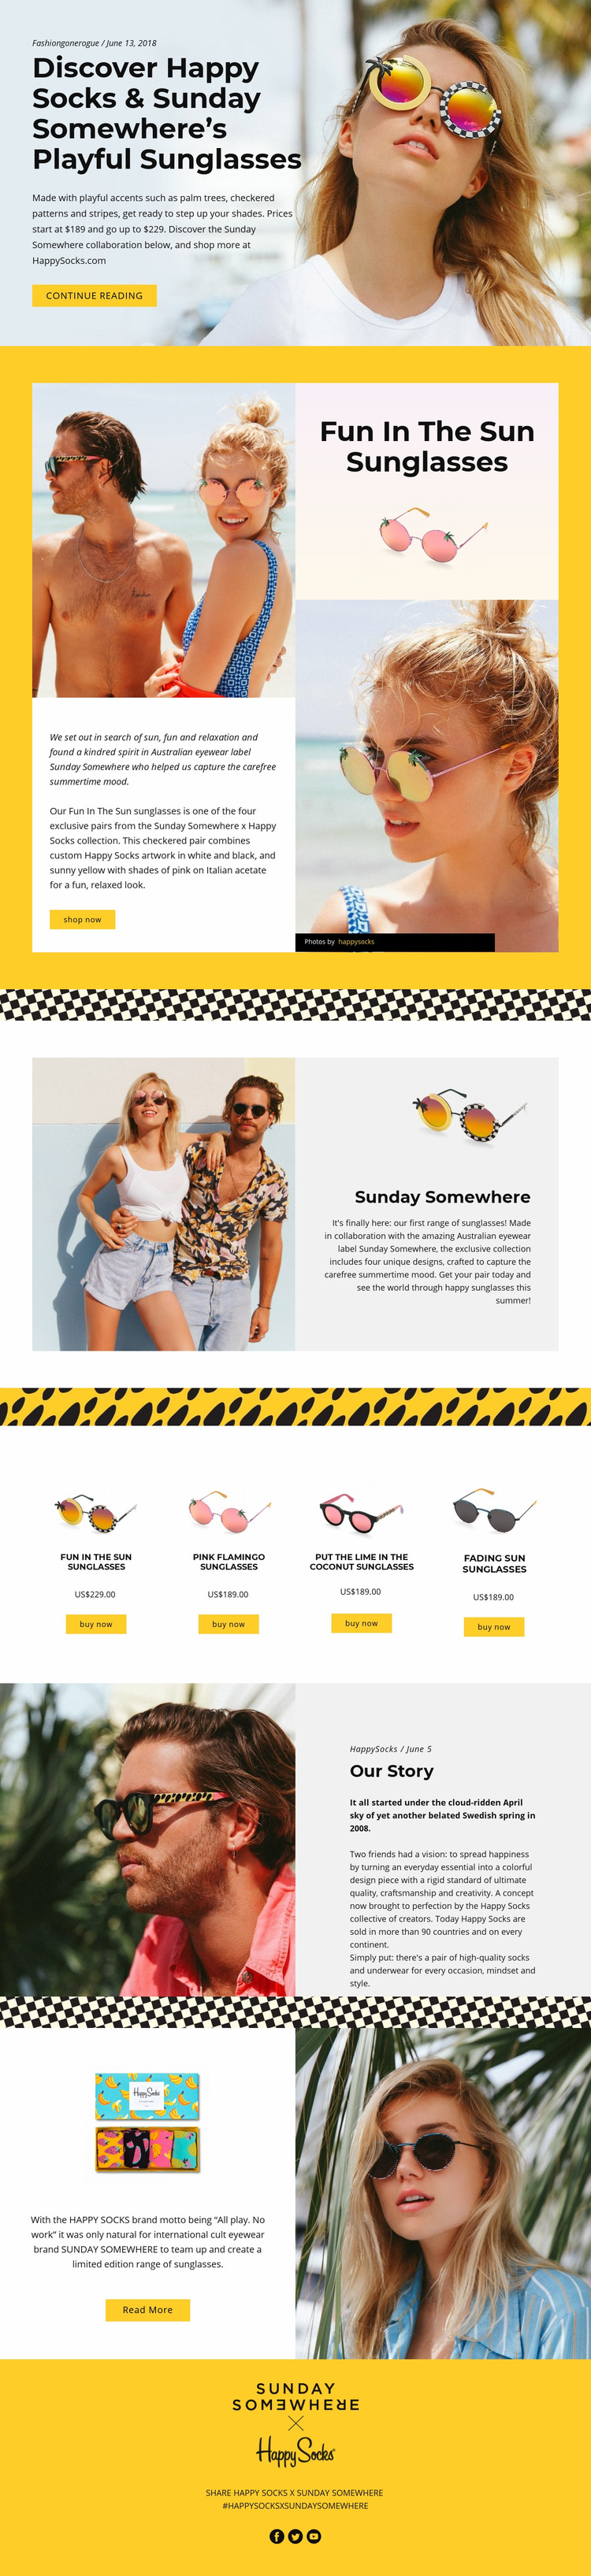 Fun Sunglasses Web Page Design